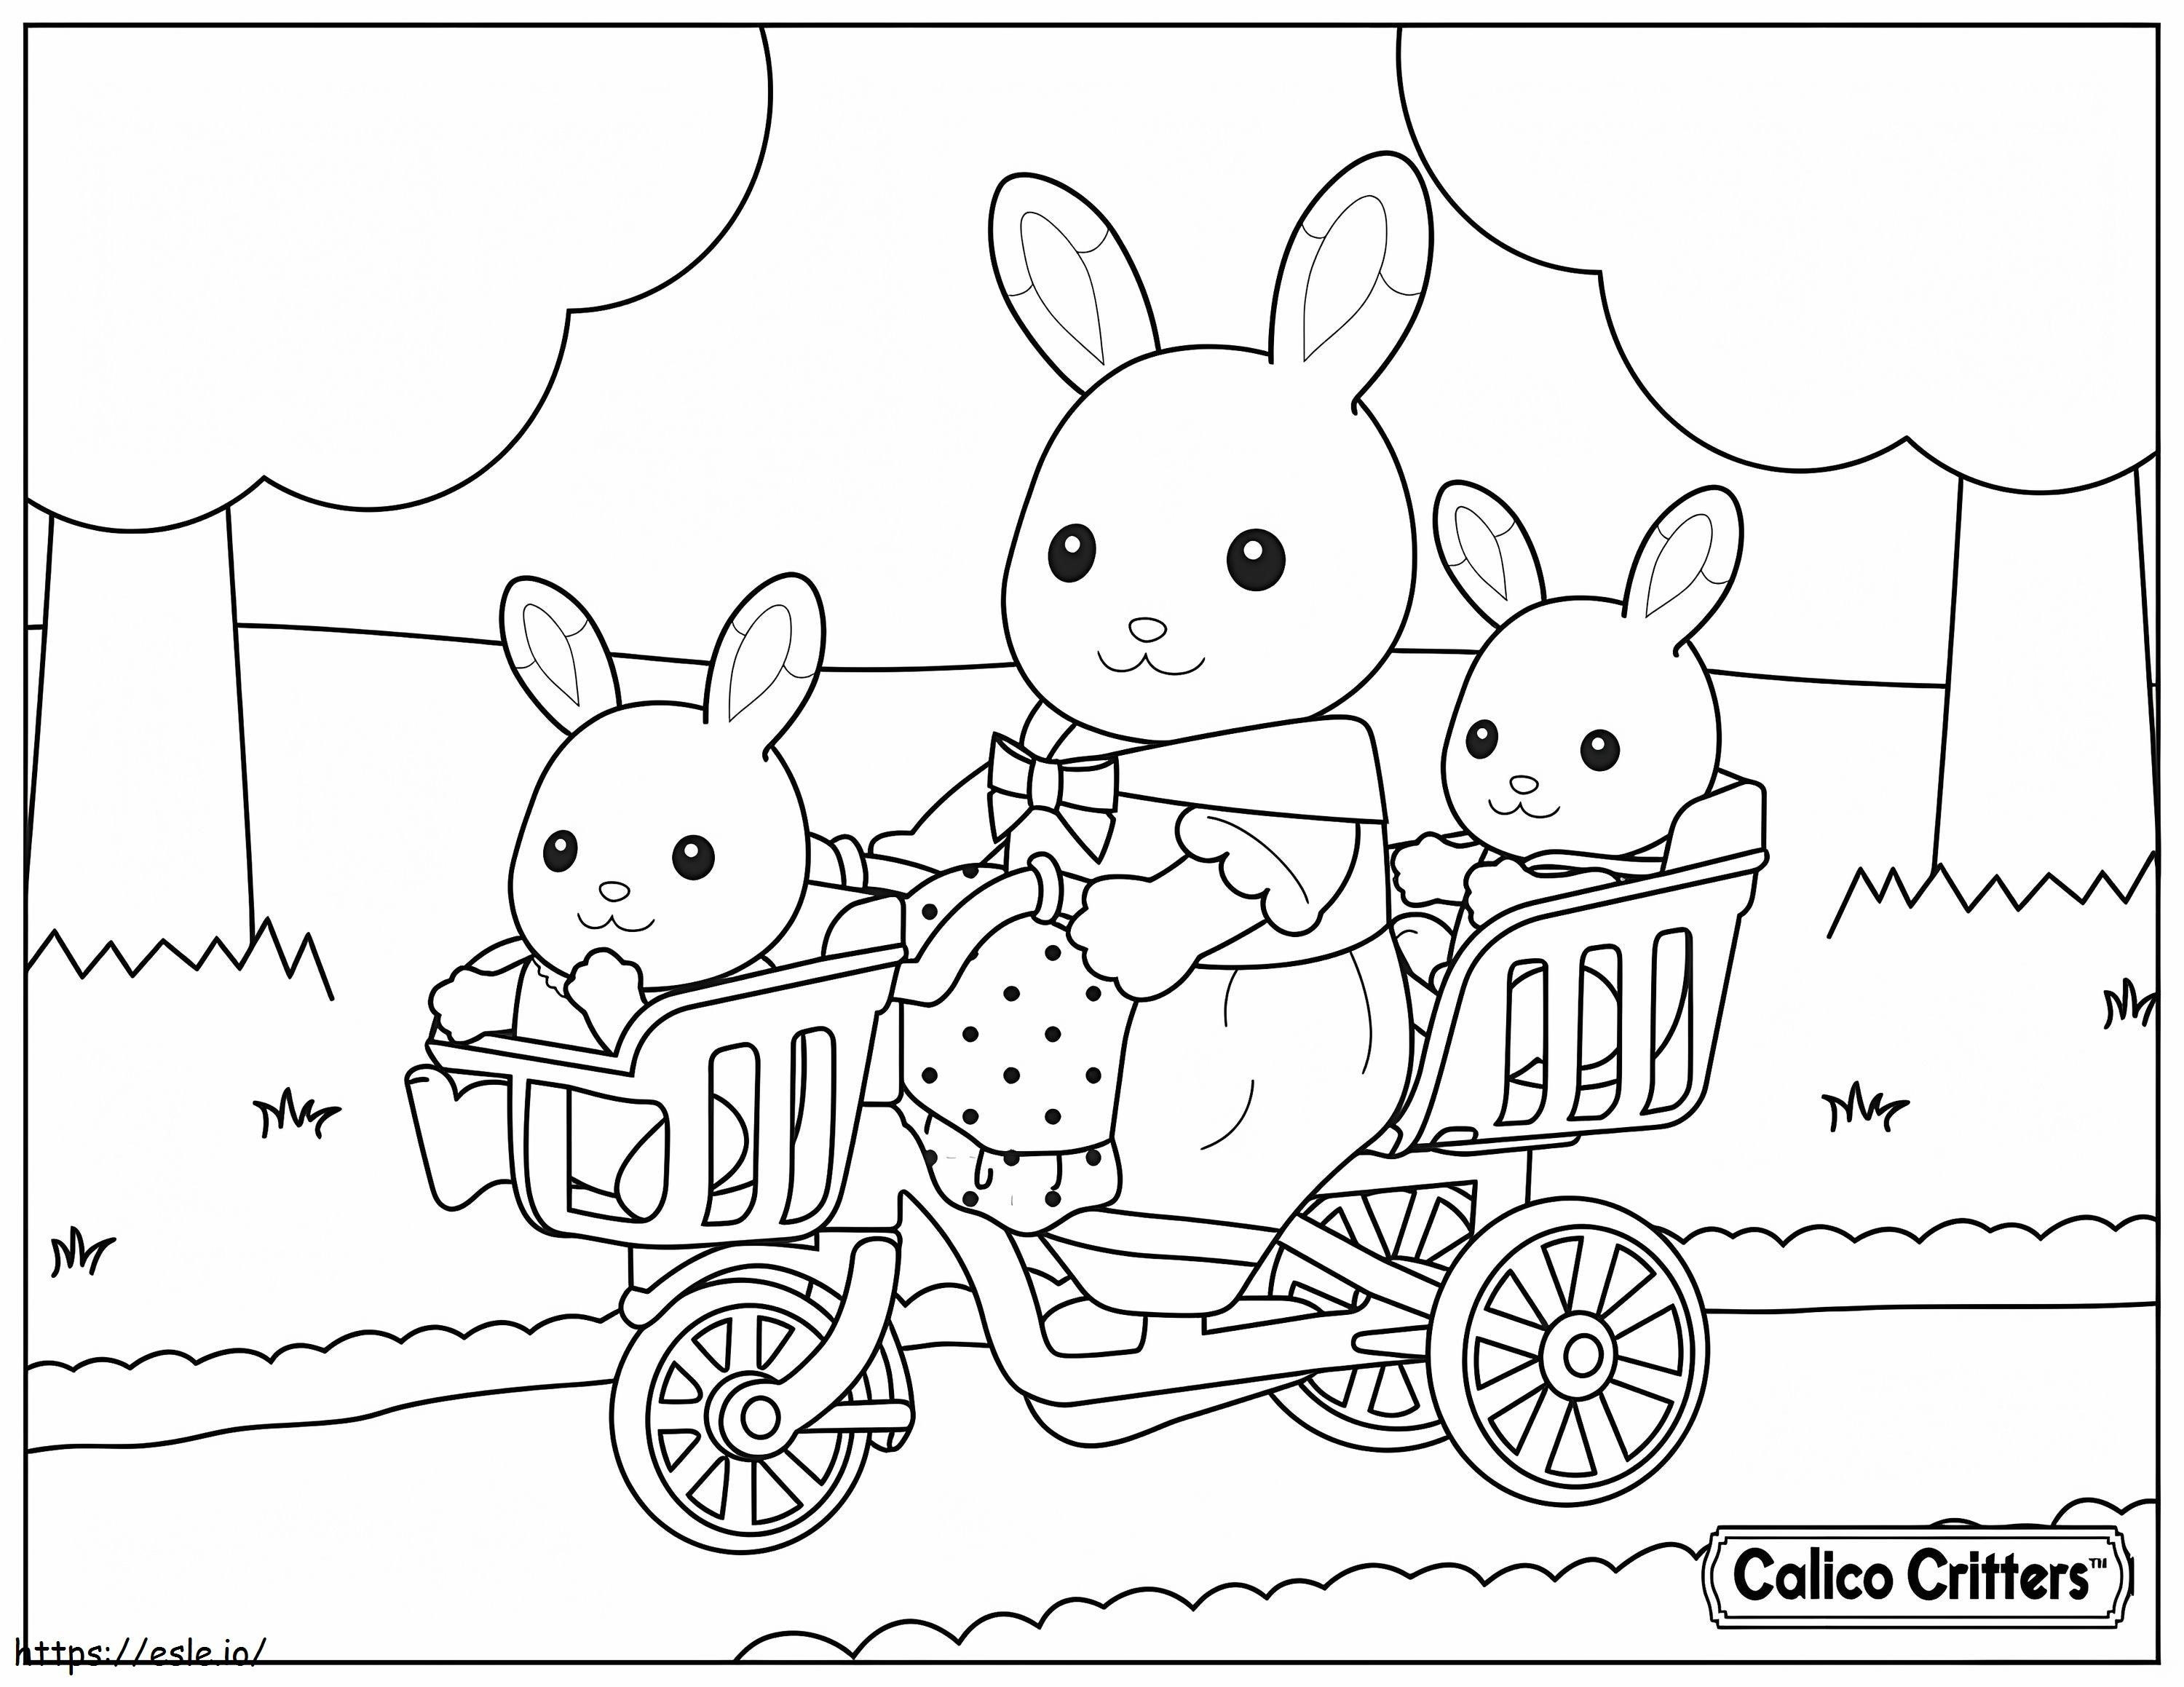  1515174989Calico Bichos com bicicleta para bebês para colorir